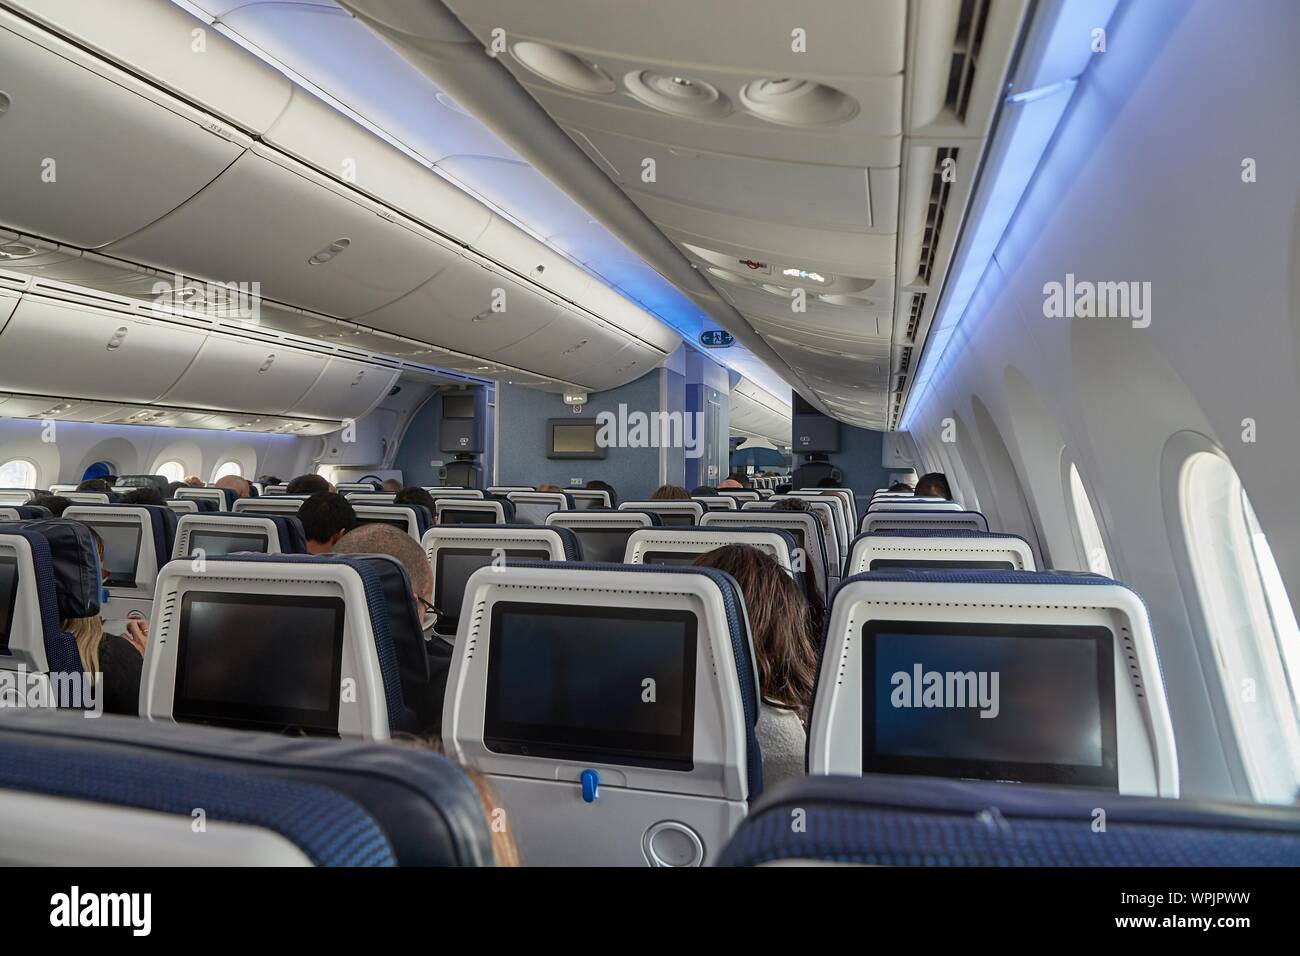 Plane cabin interior Stock Photo